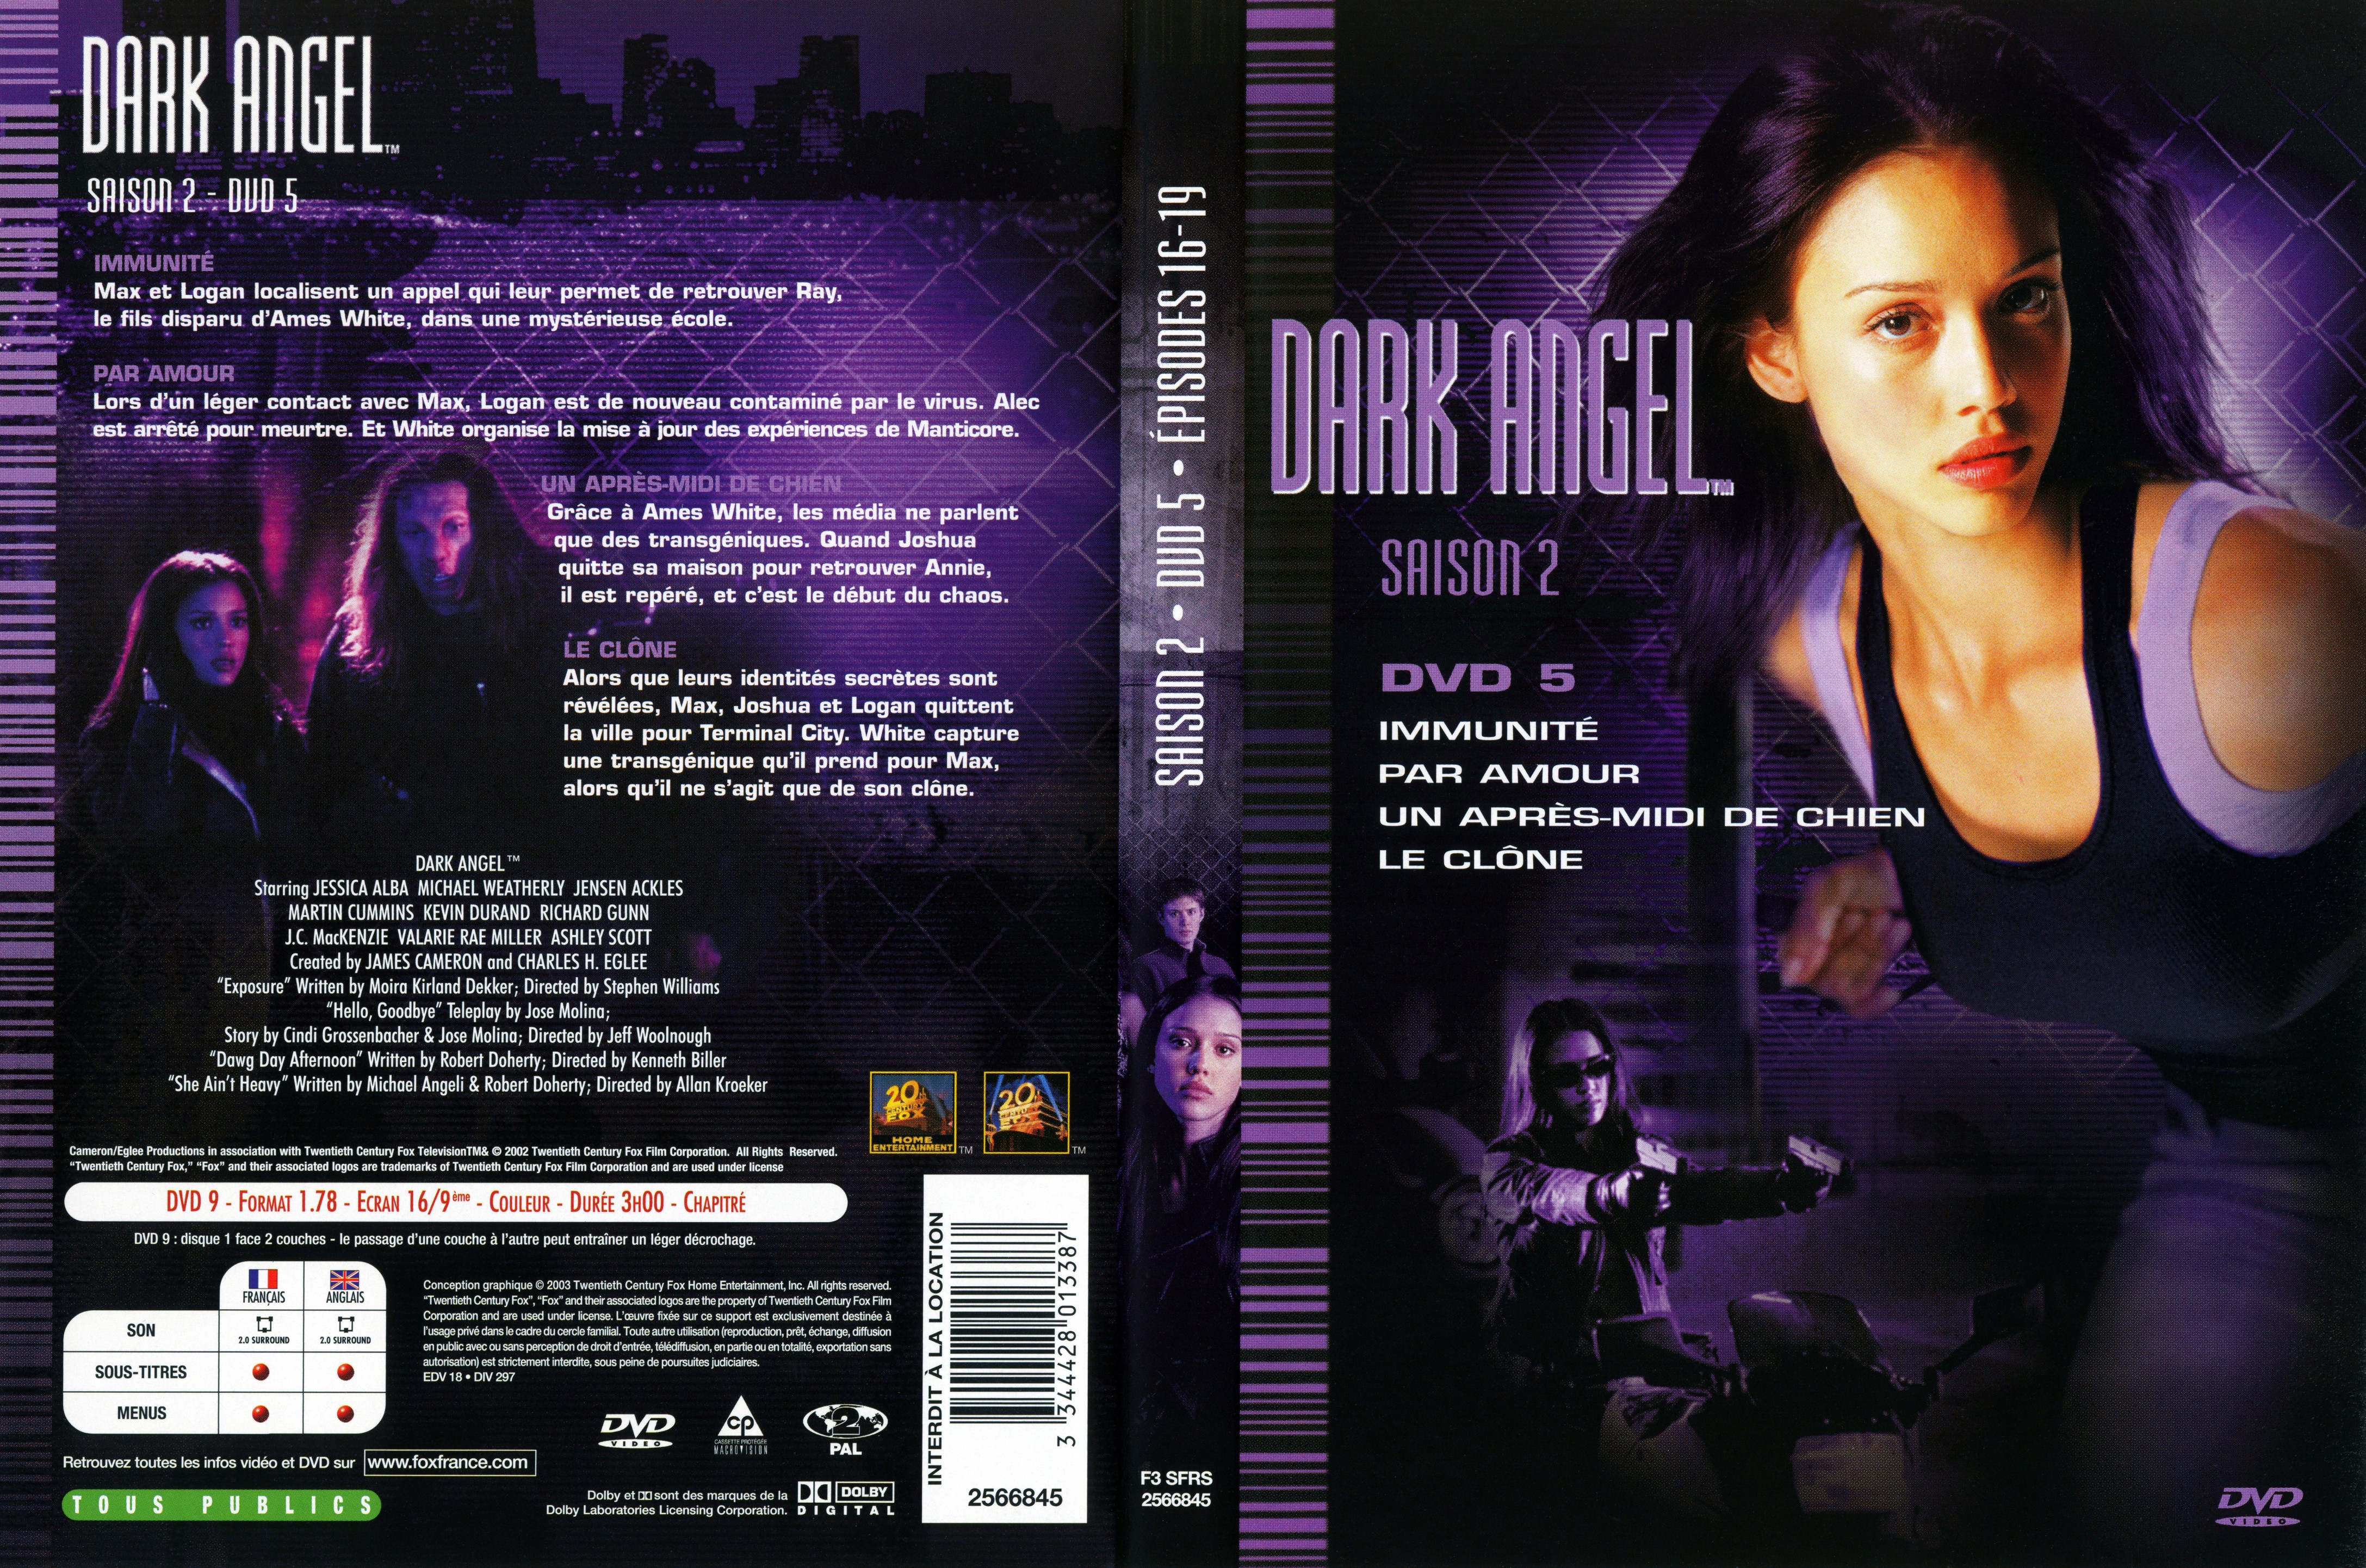 Jaquette DVD Dark Angel Saison 2 DVD 5